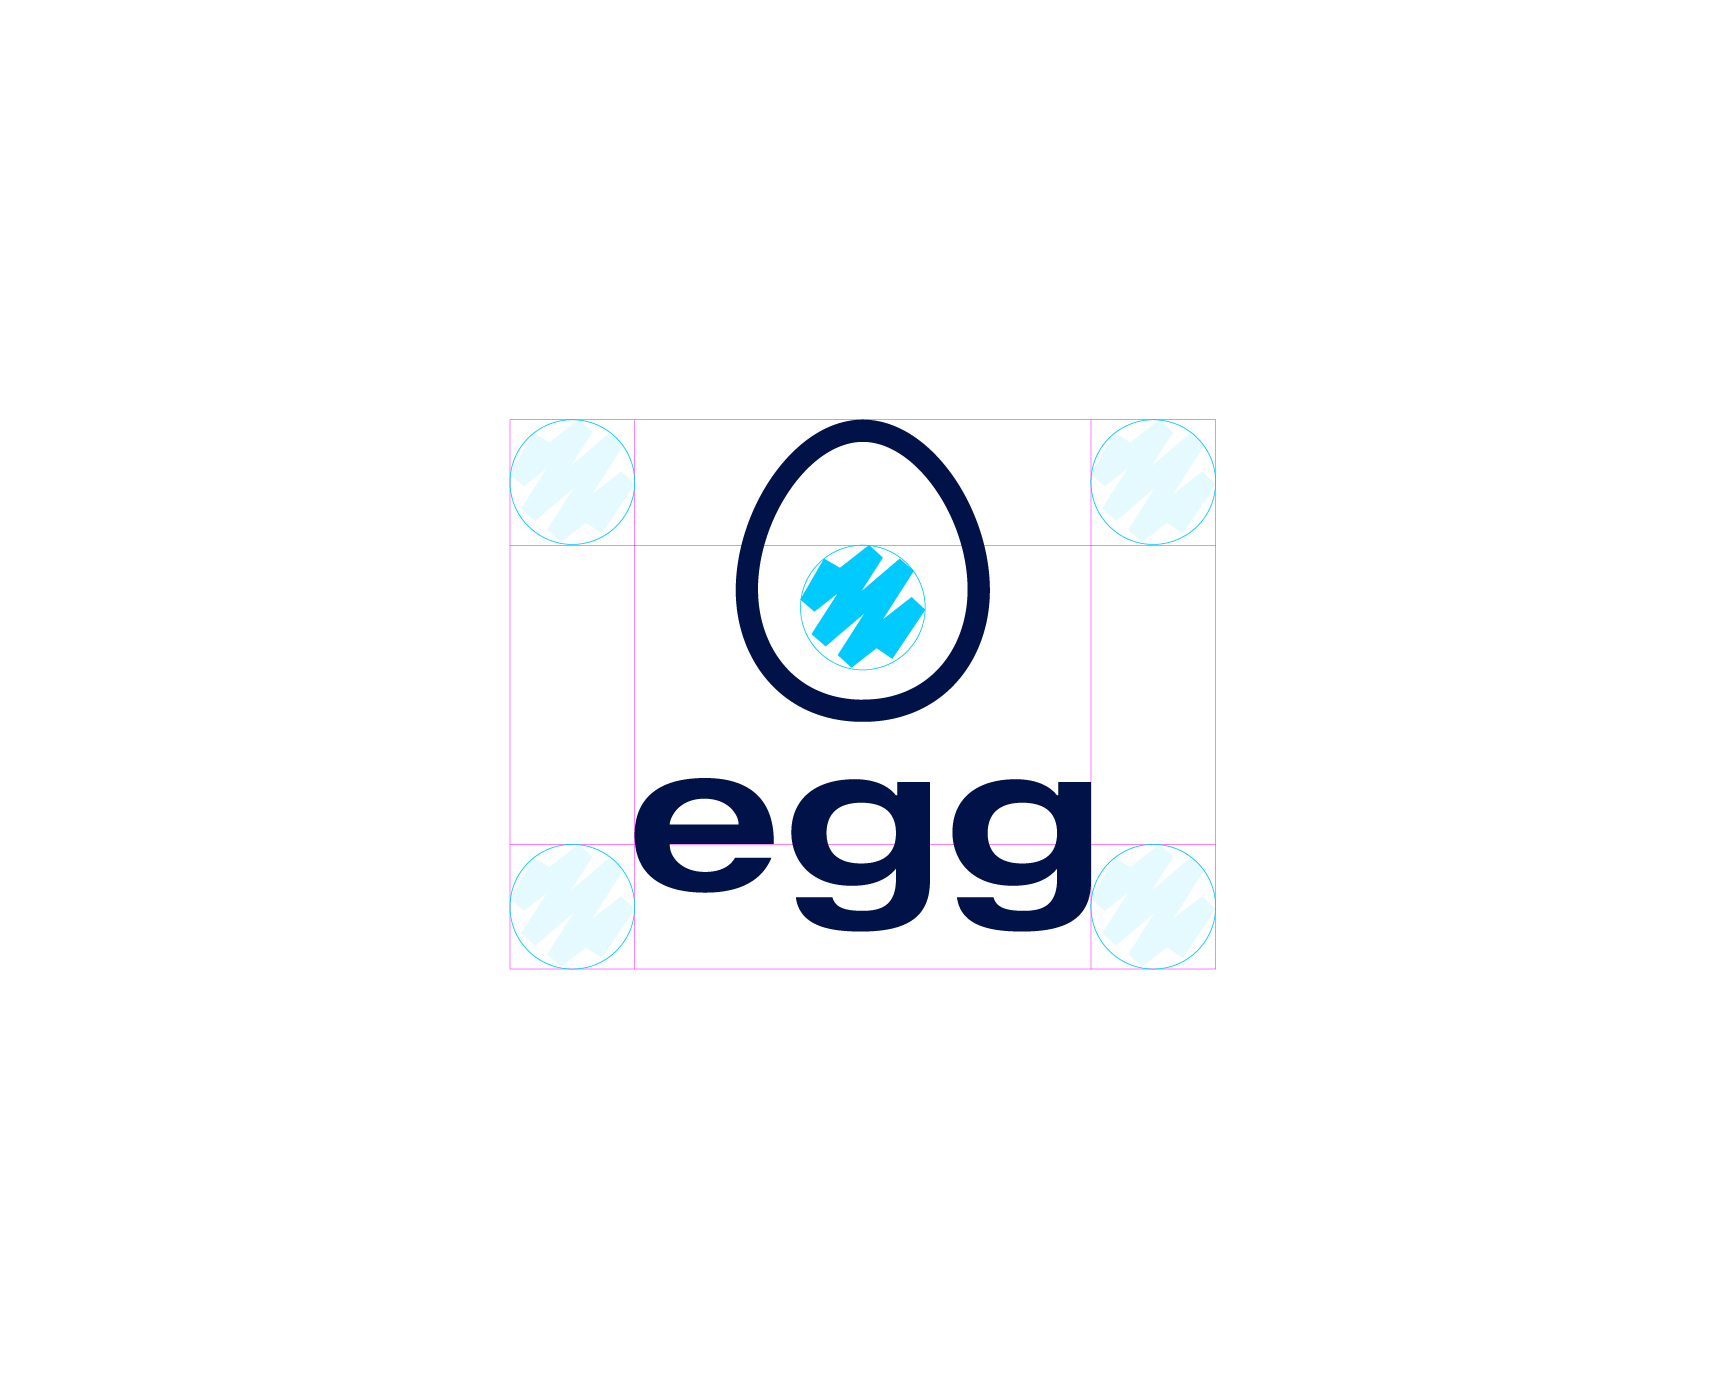 egg branding vertical logo kommigraphics